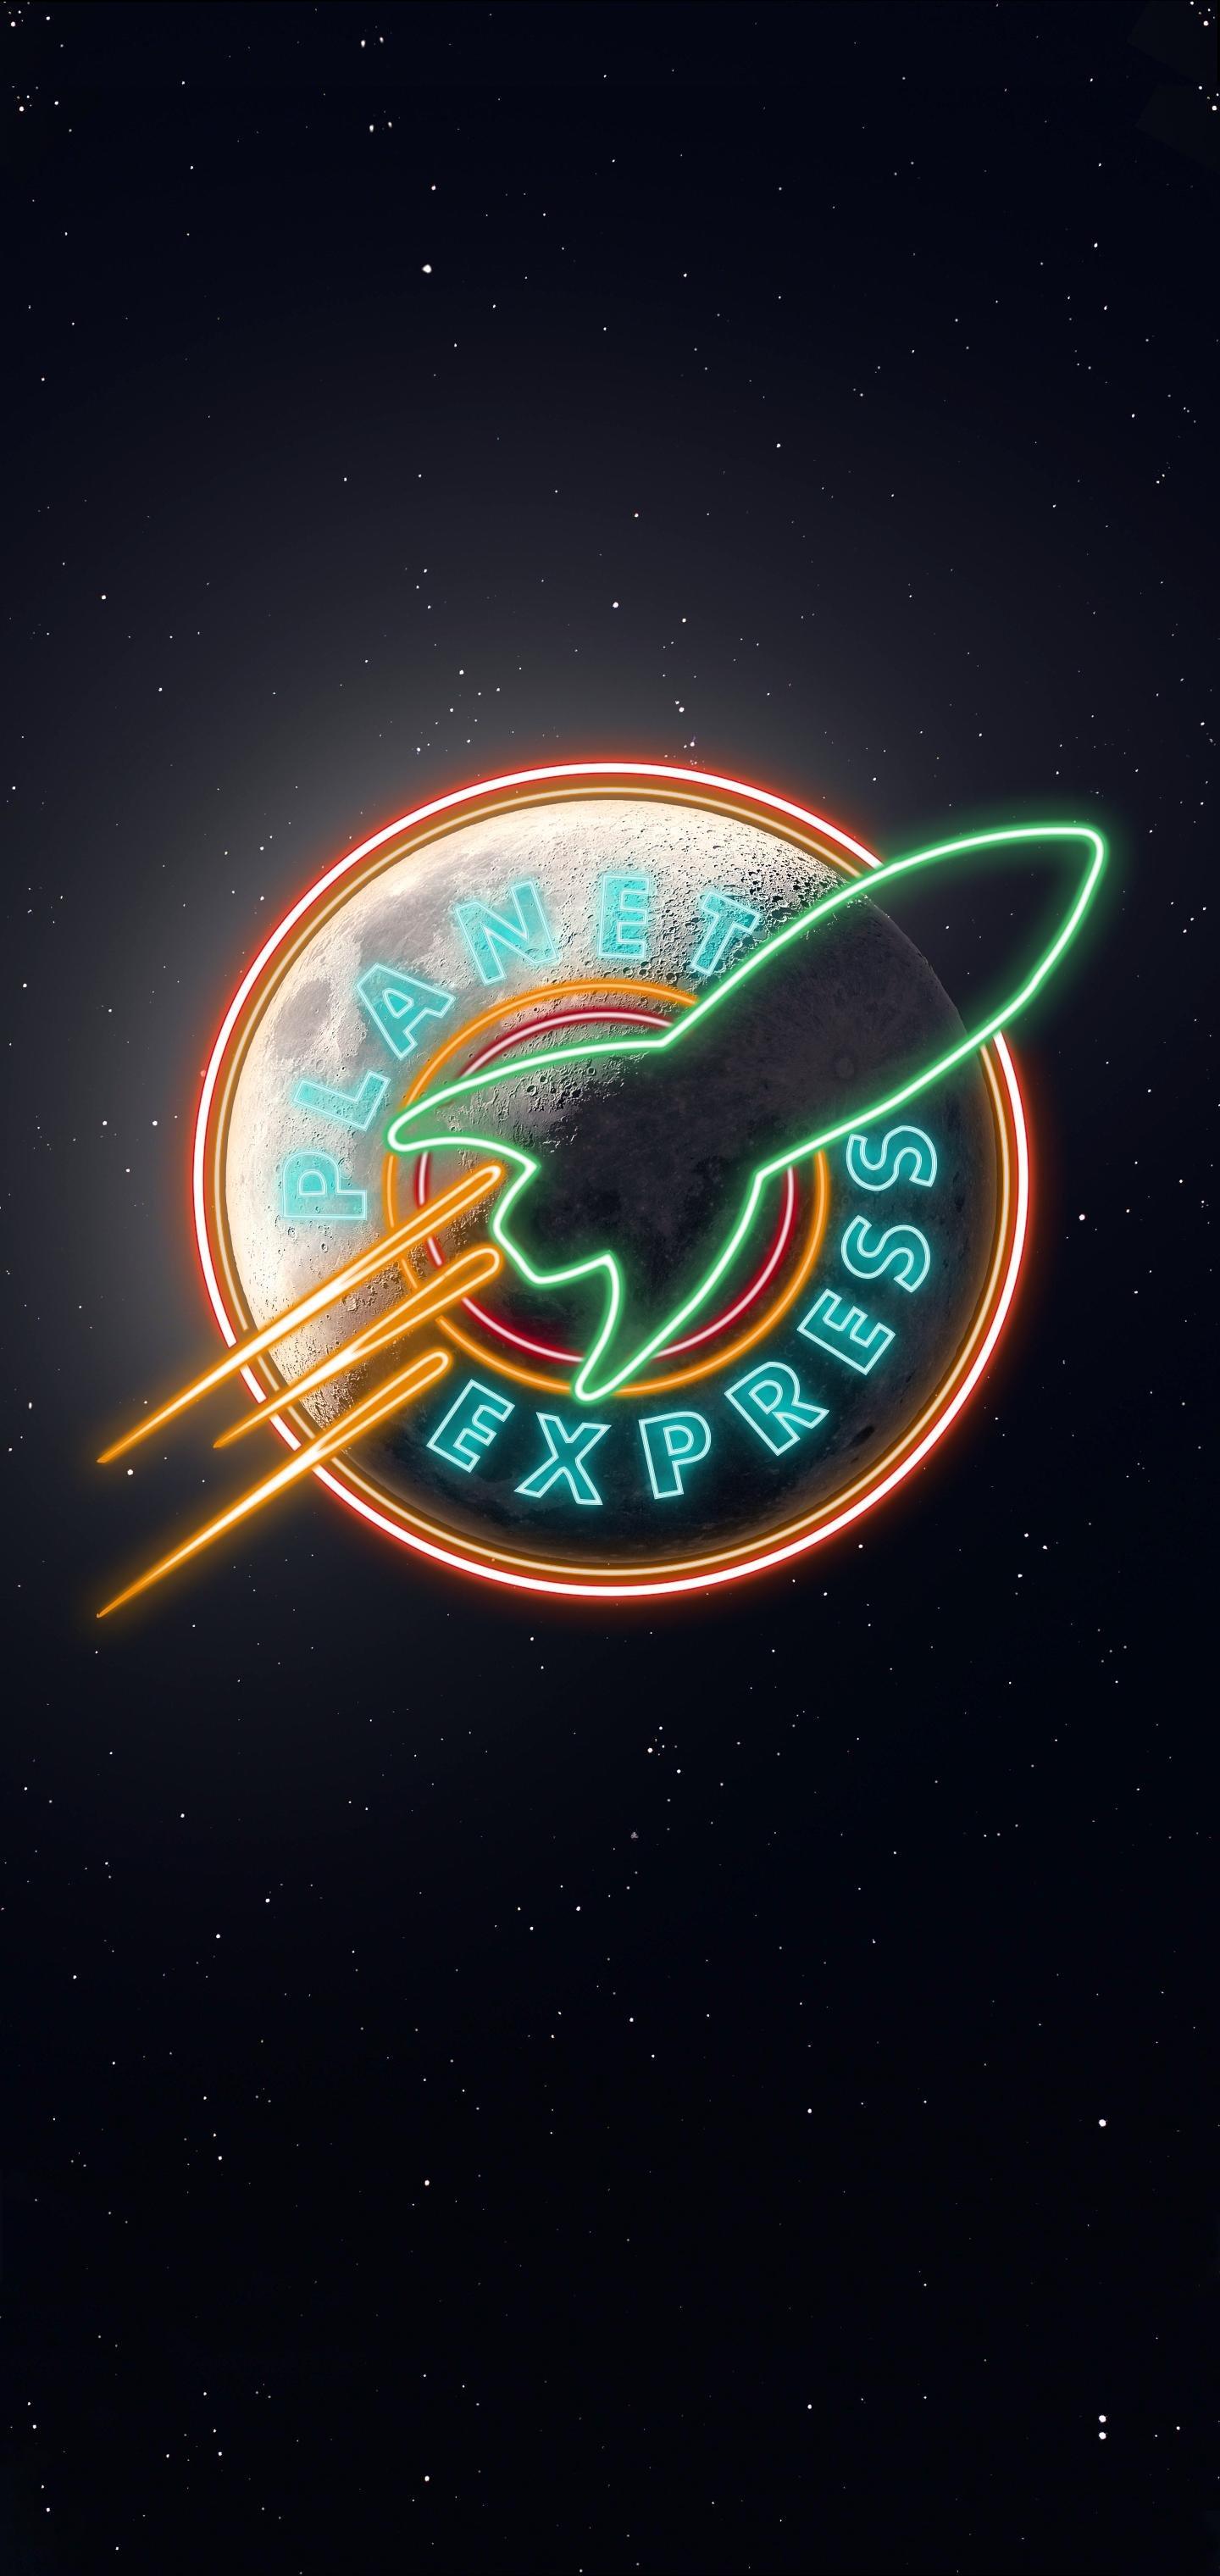 Planet Express. iPhone X Wallpaper X Wallpaper HD